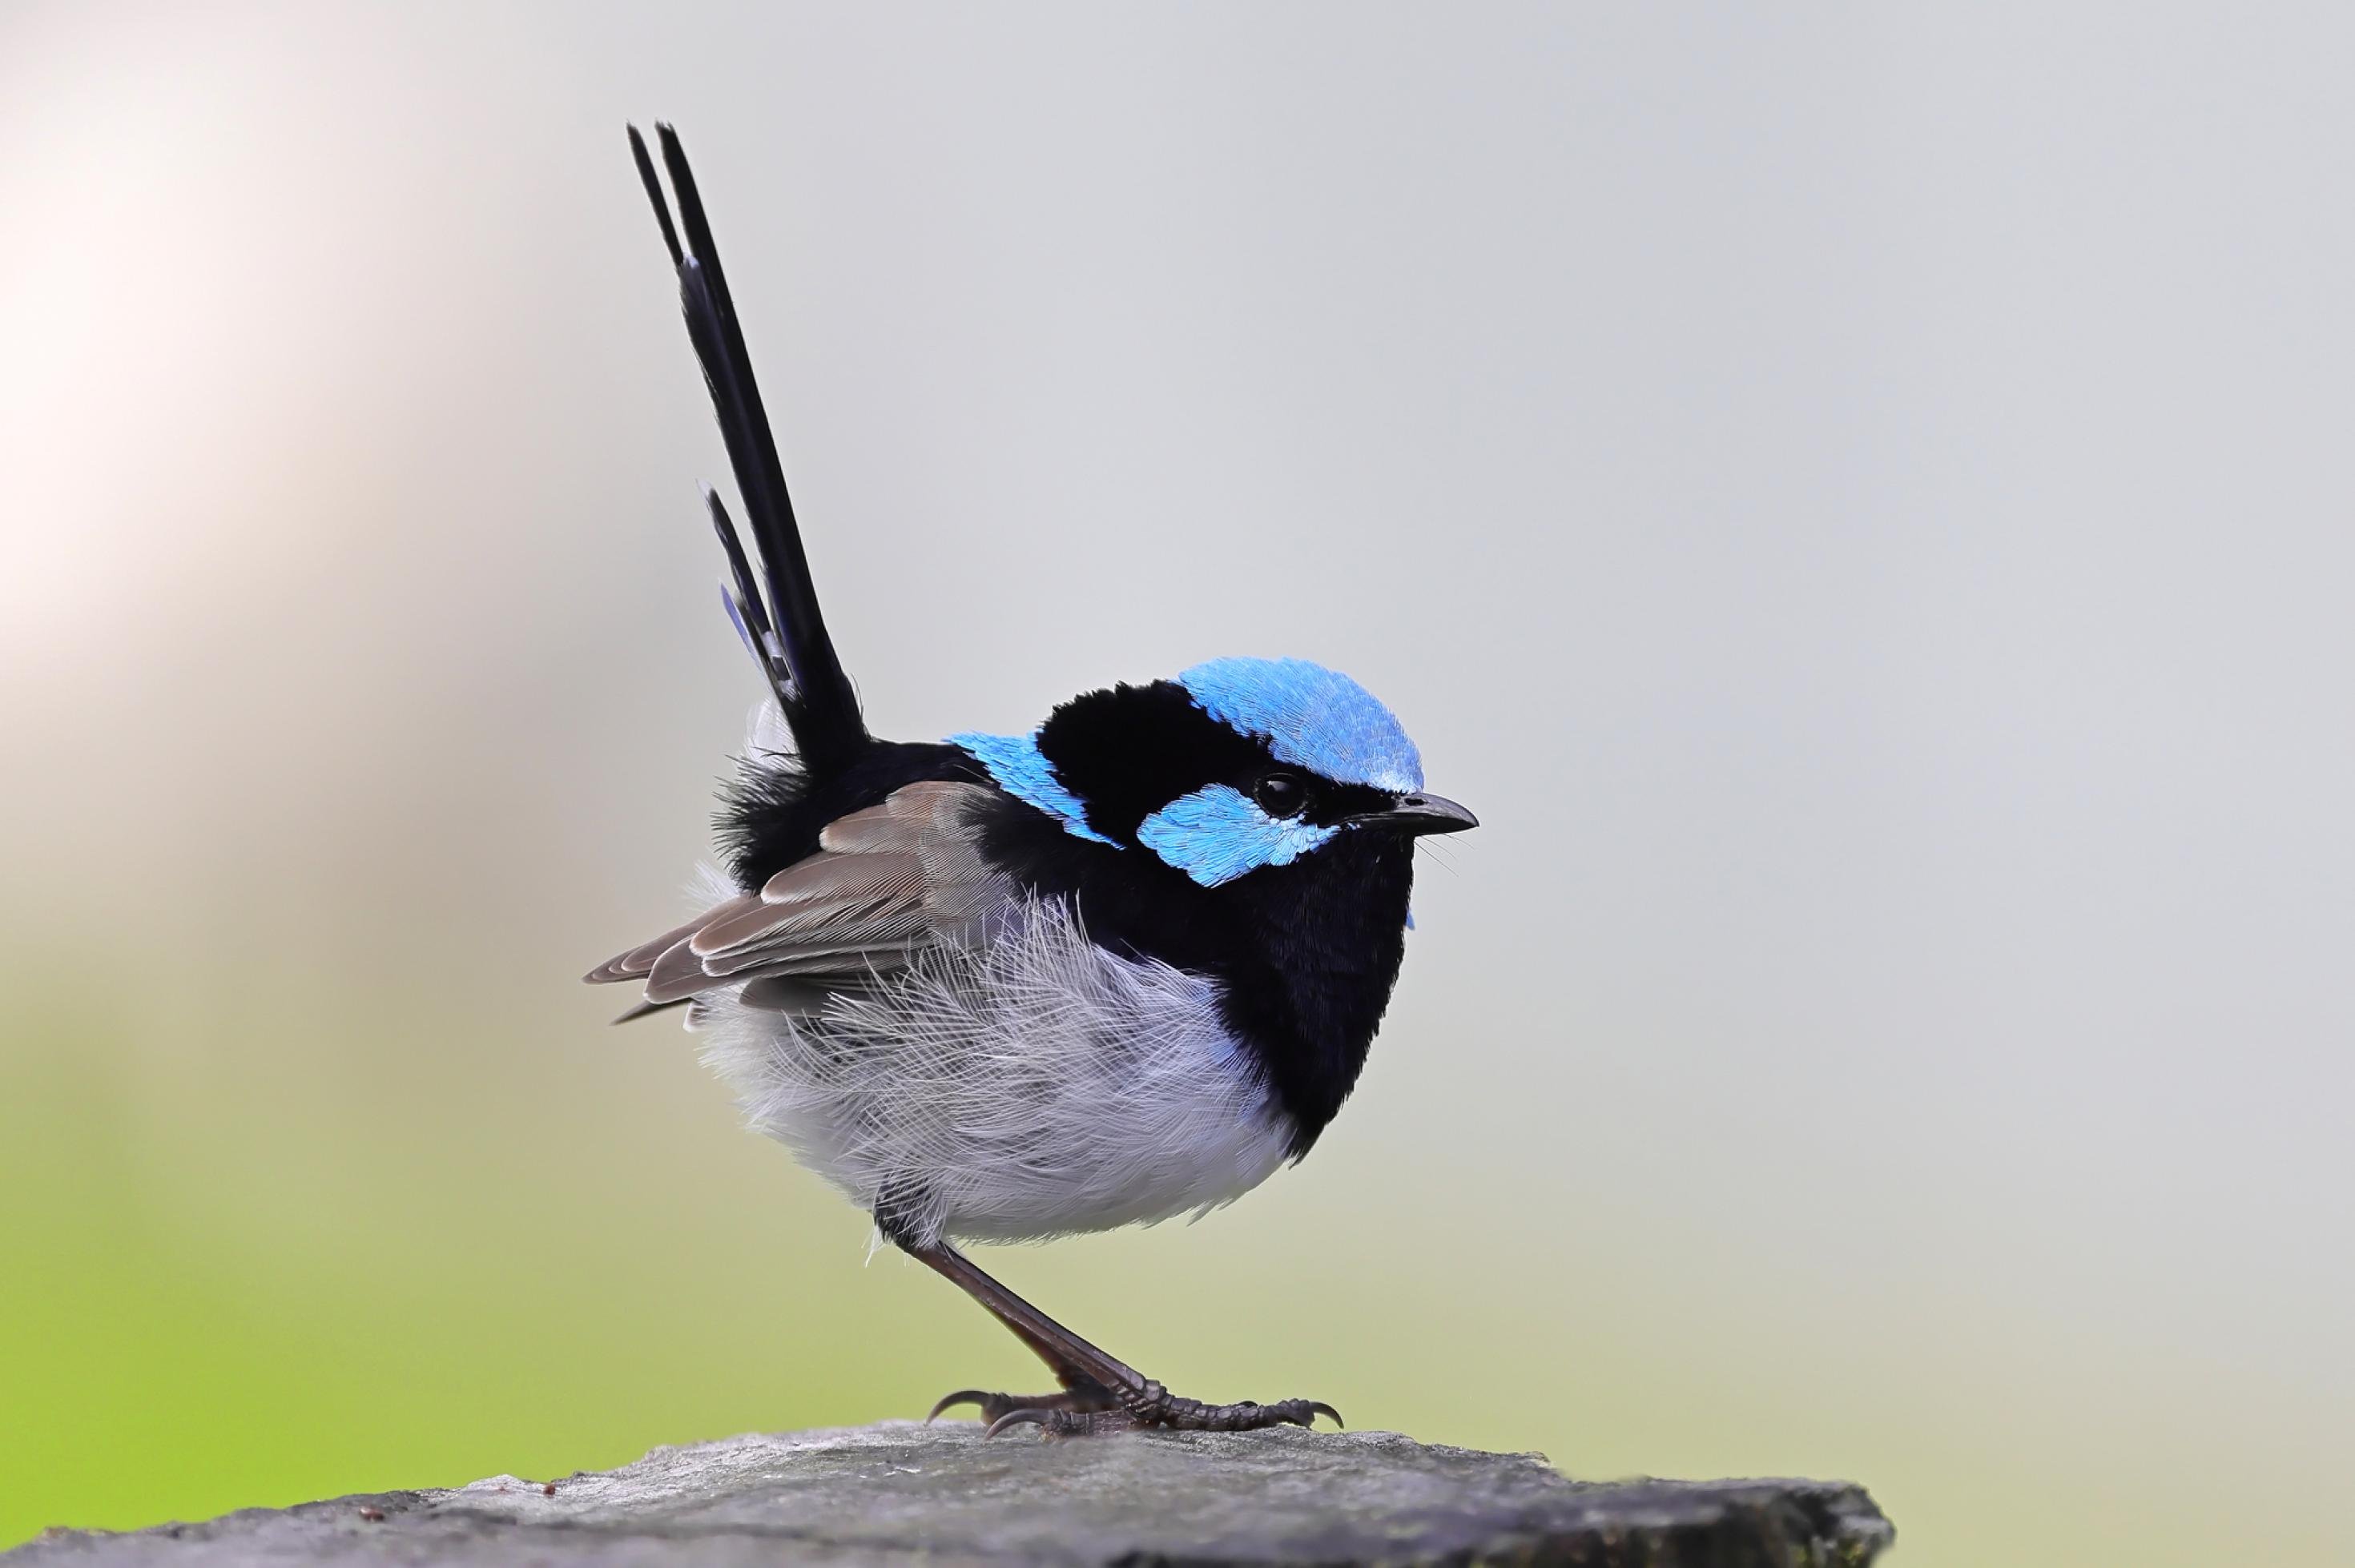 ein kleiner, runder Vogel mit blauem Hals und Rücken sitzt auf dem Boden, etwa so groß wie ein Spatz